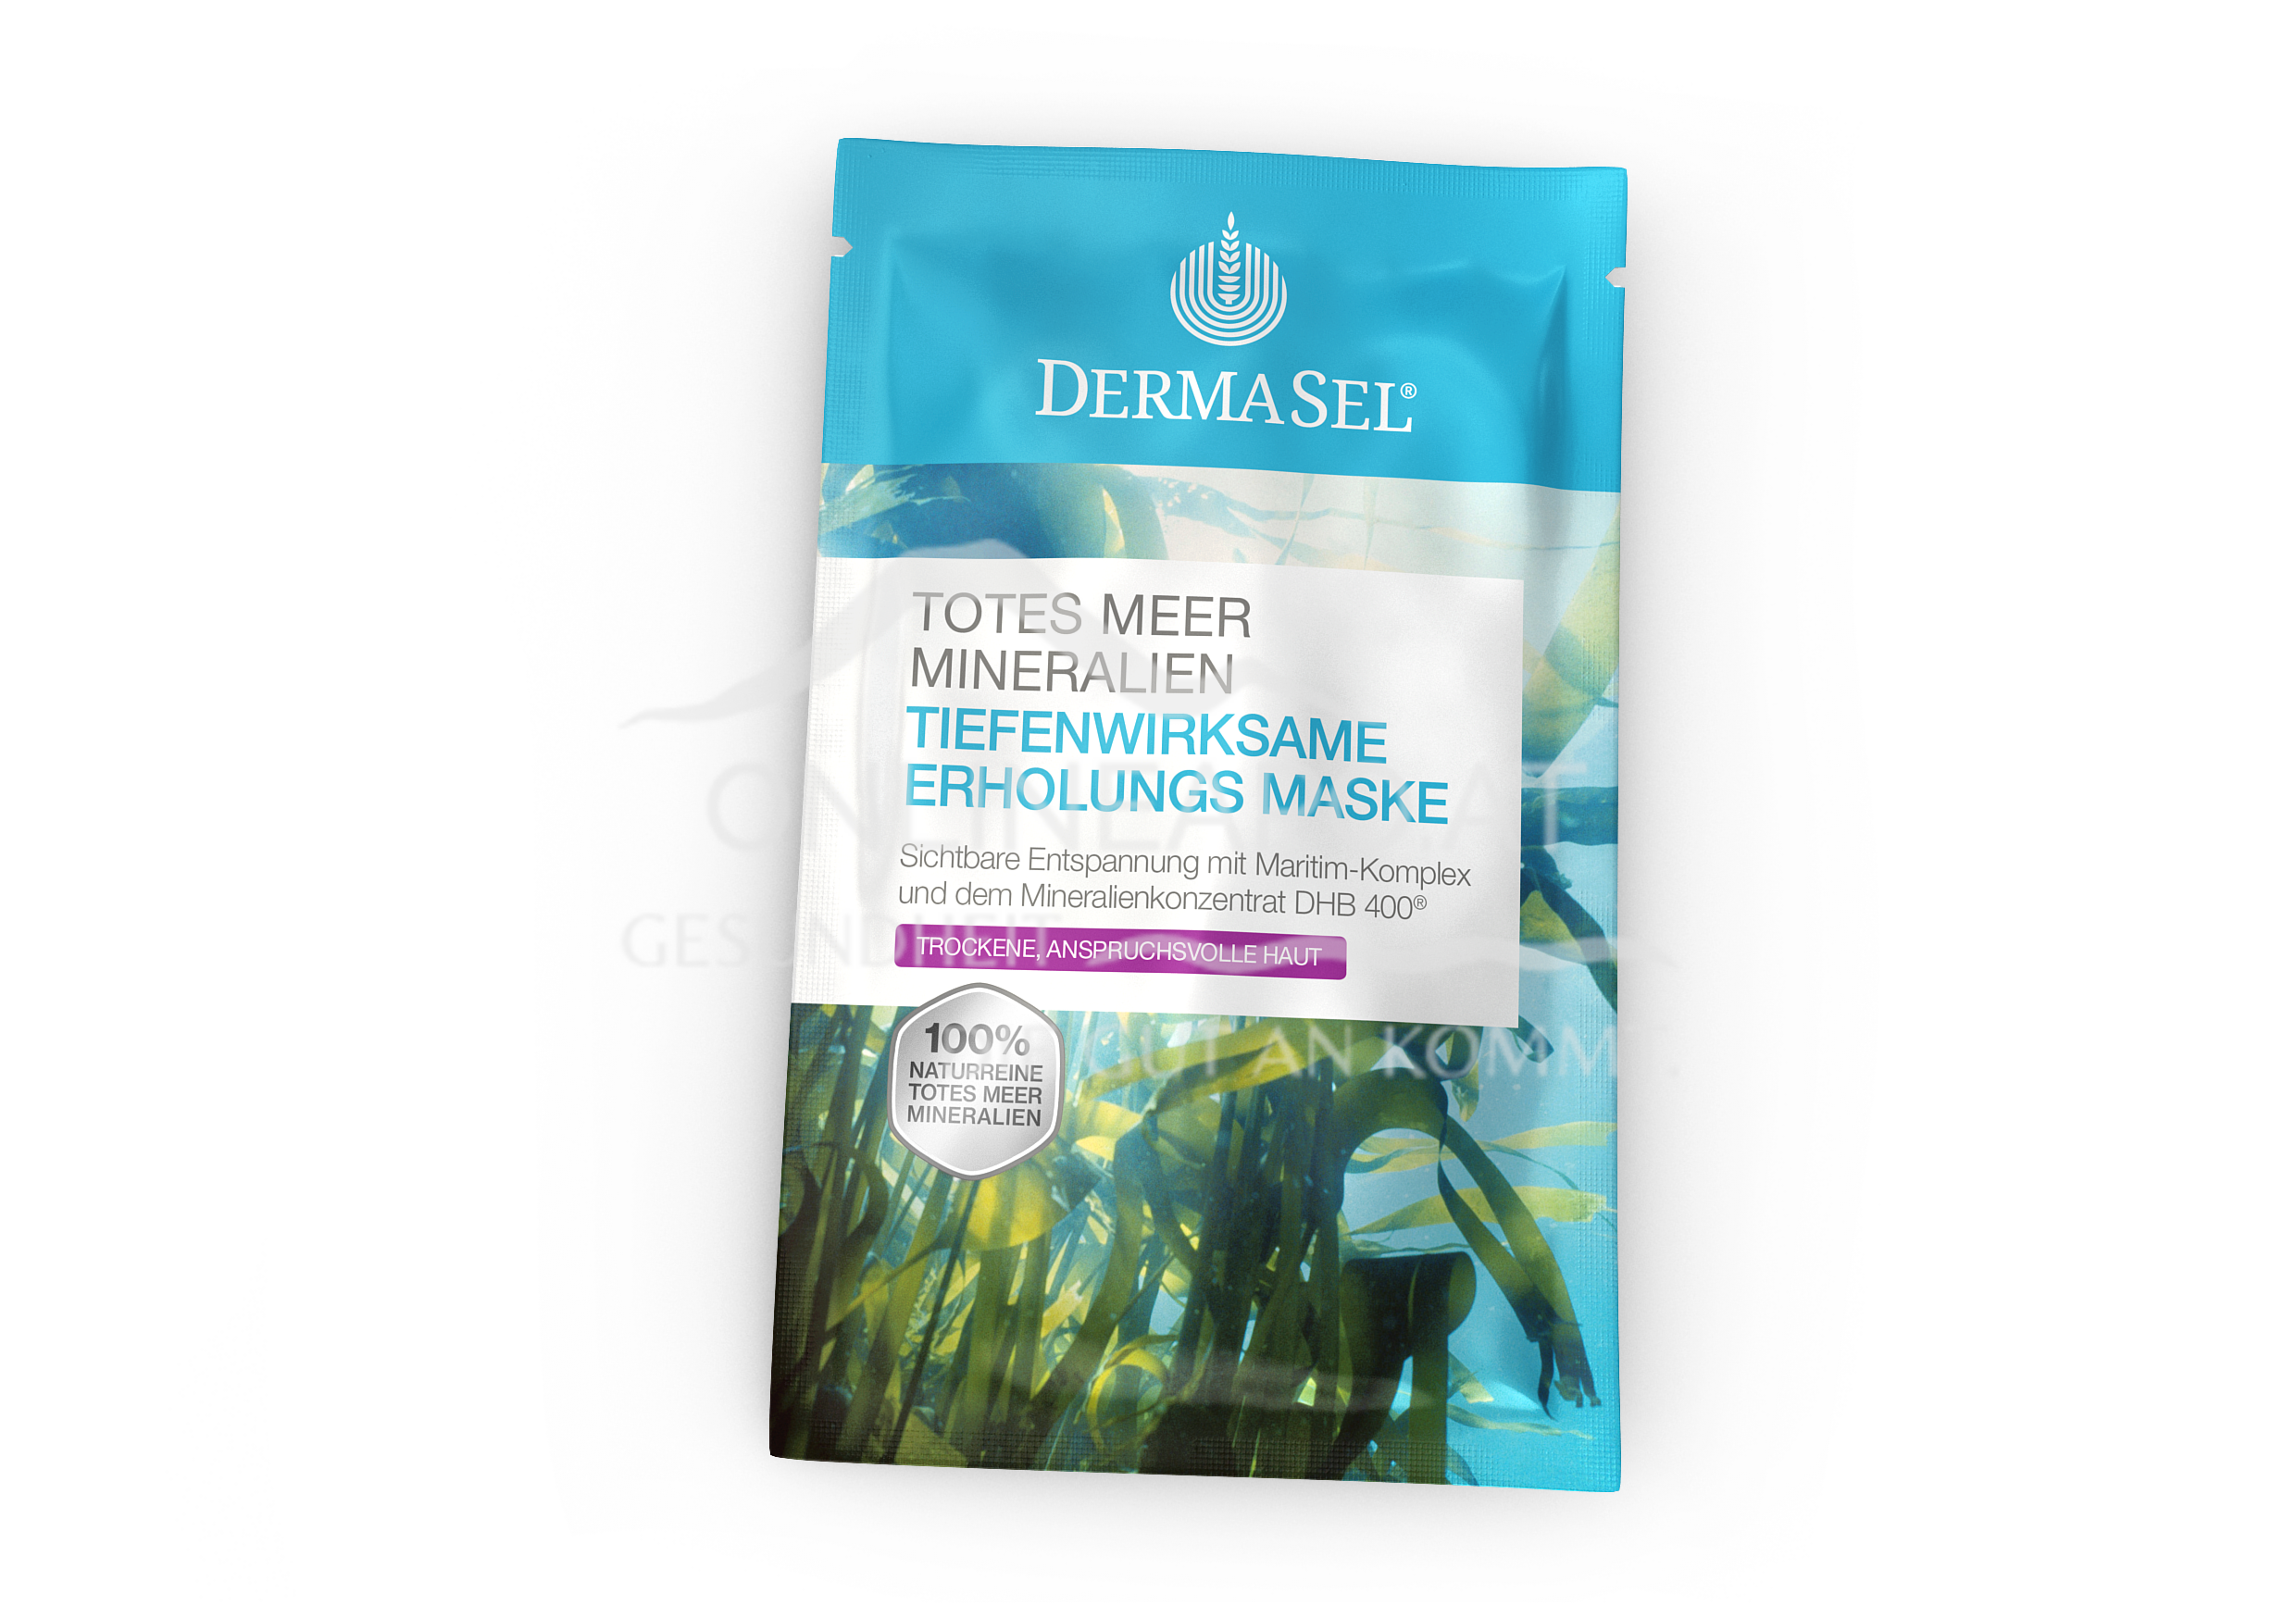 DermaSel® Totes Meer Mineralien Tiefenwirksame Erholungs Maske